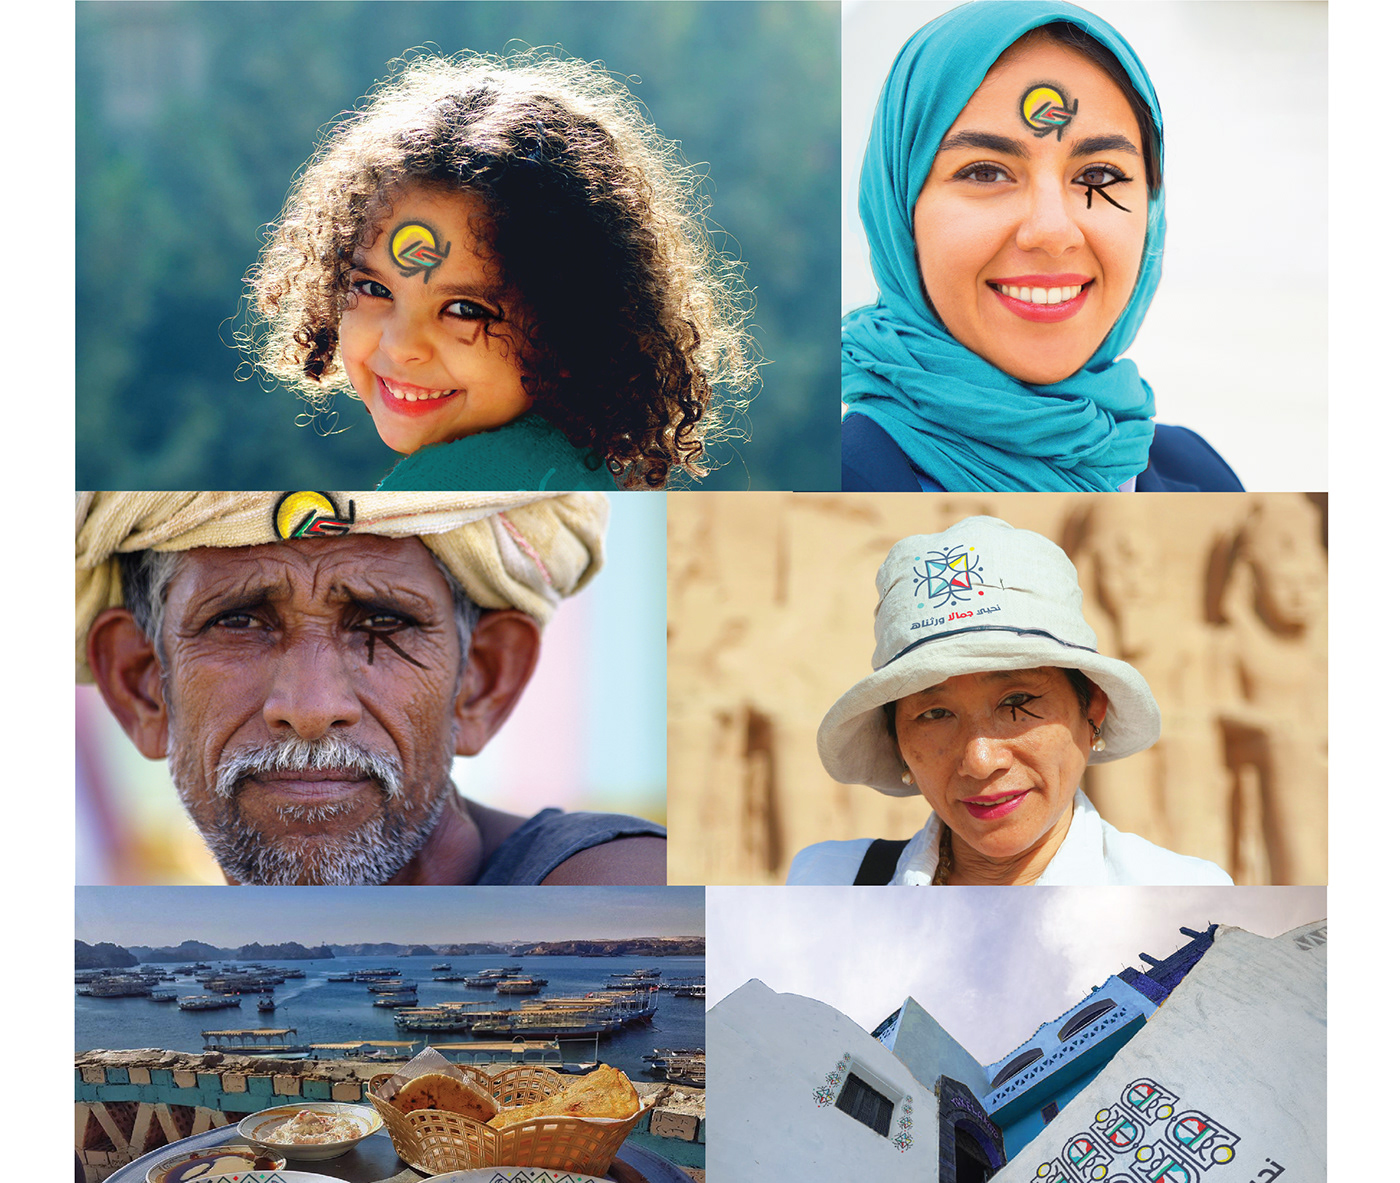 branding  City Brand egypt egyptian folk folk art ILLUSTRATION  Pharaohs postage stamps visual art